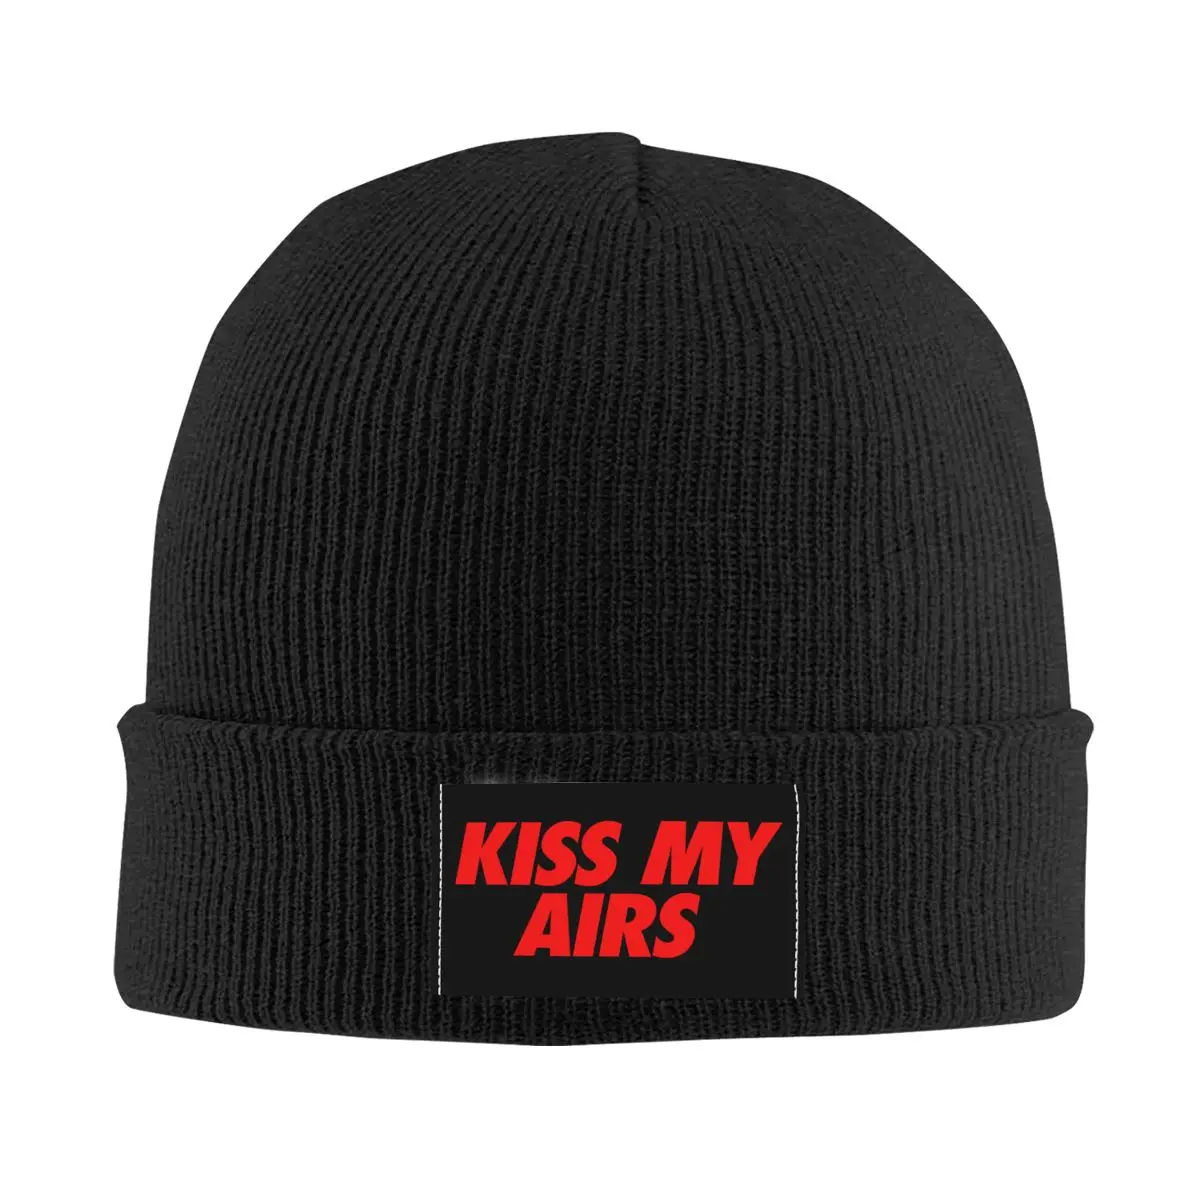 

Kiss My Airs Skullies Beanies Caps Unisex Winter Warm Knitted Hat Men Women Hip Hop Adult Bonnet Hats Outdoor Ski Cap